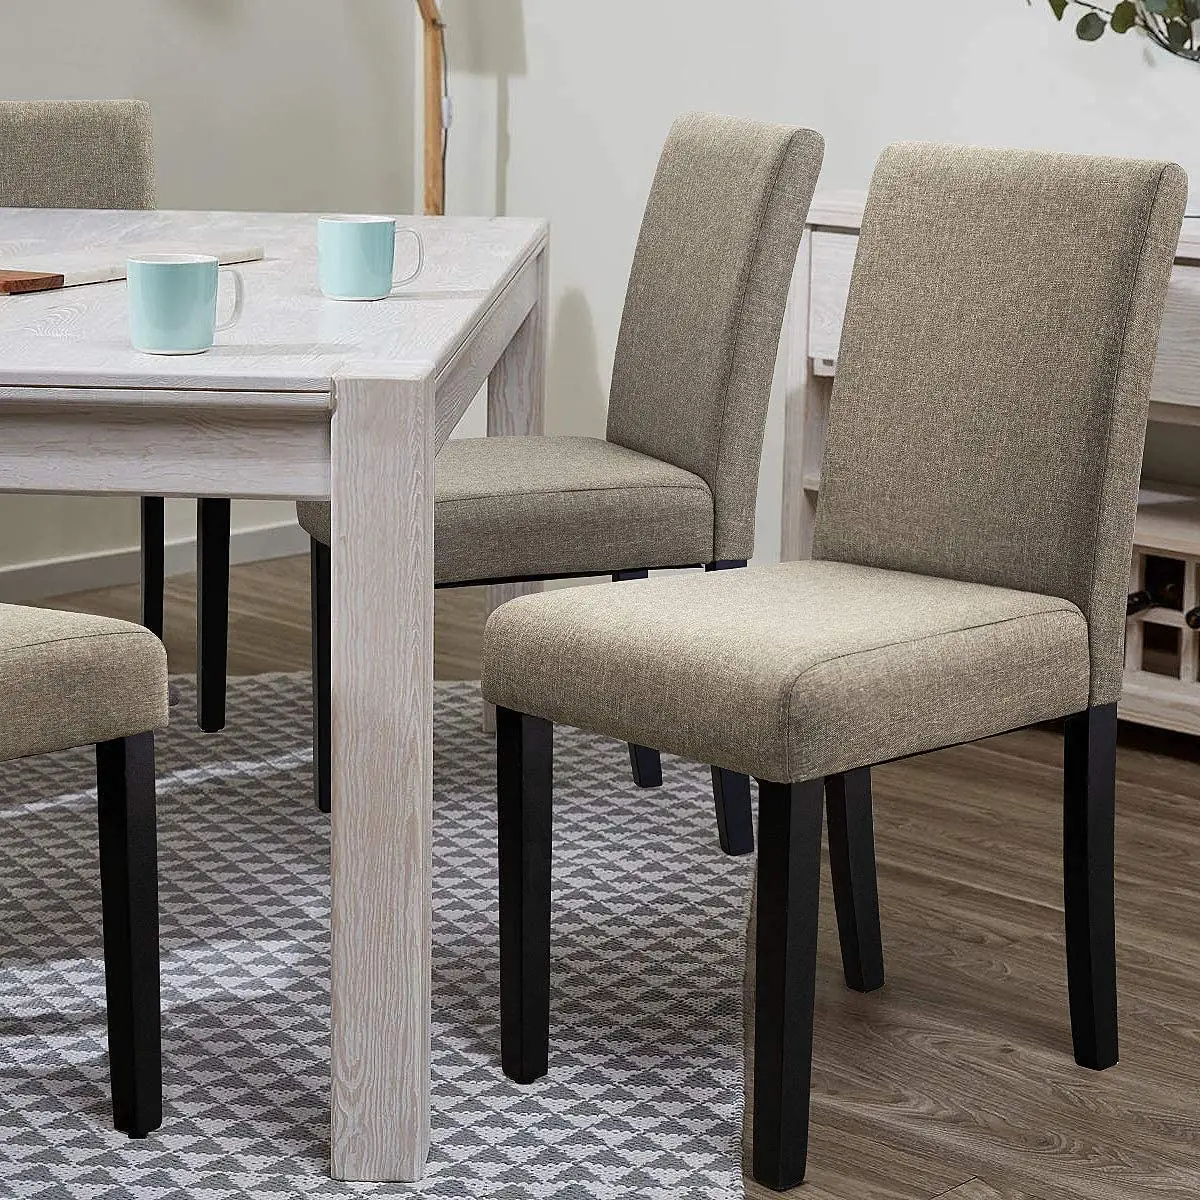 Modern european minimalist wood highend hotel restaurant chairs furniture